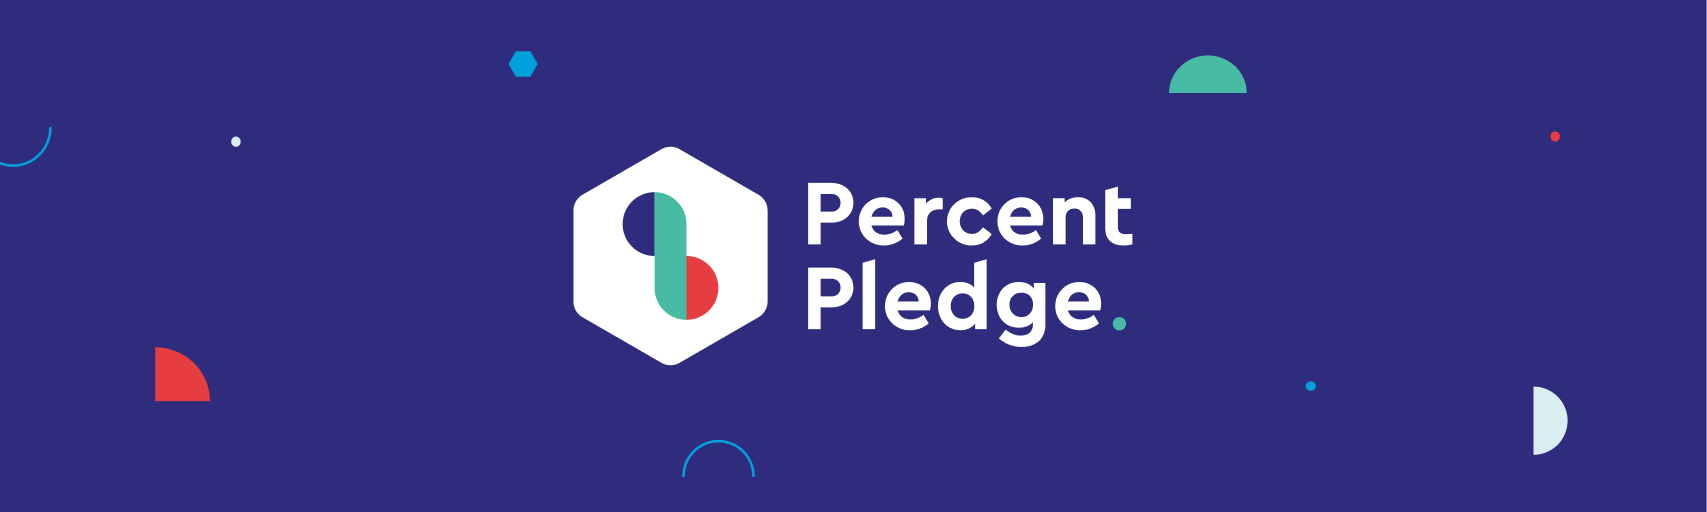 Percent Pledge new brand